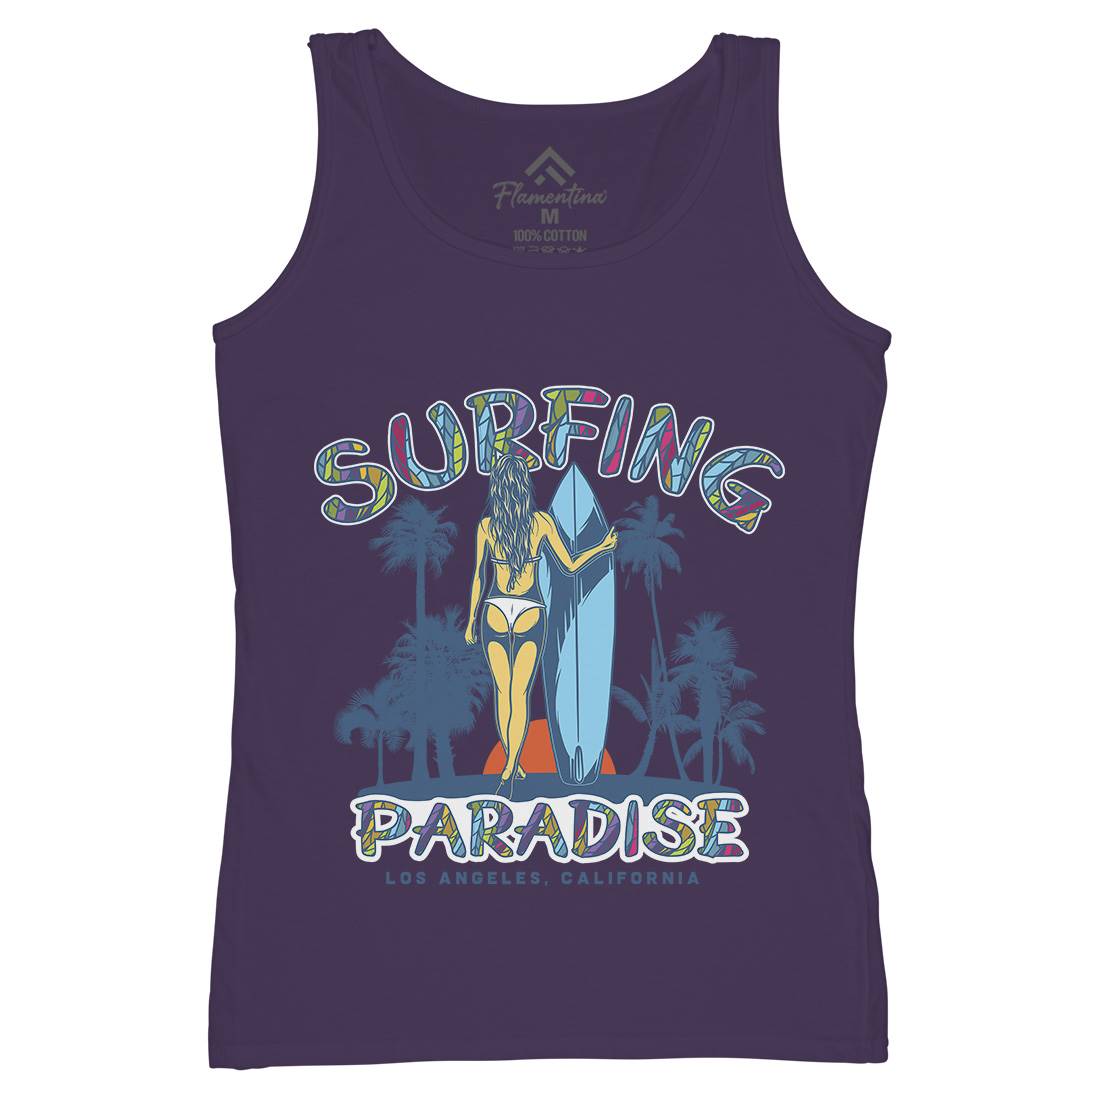 Surfing Paradise La Womens Organic Tank Top Vest Surf D990